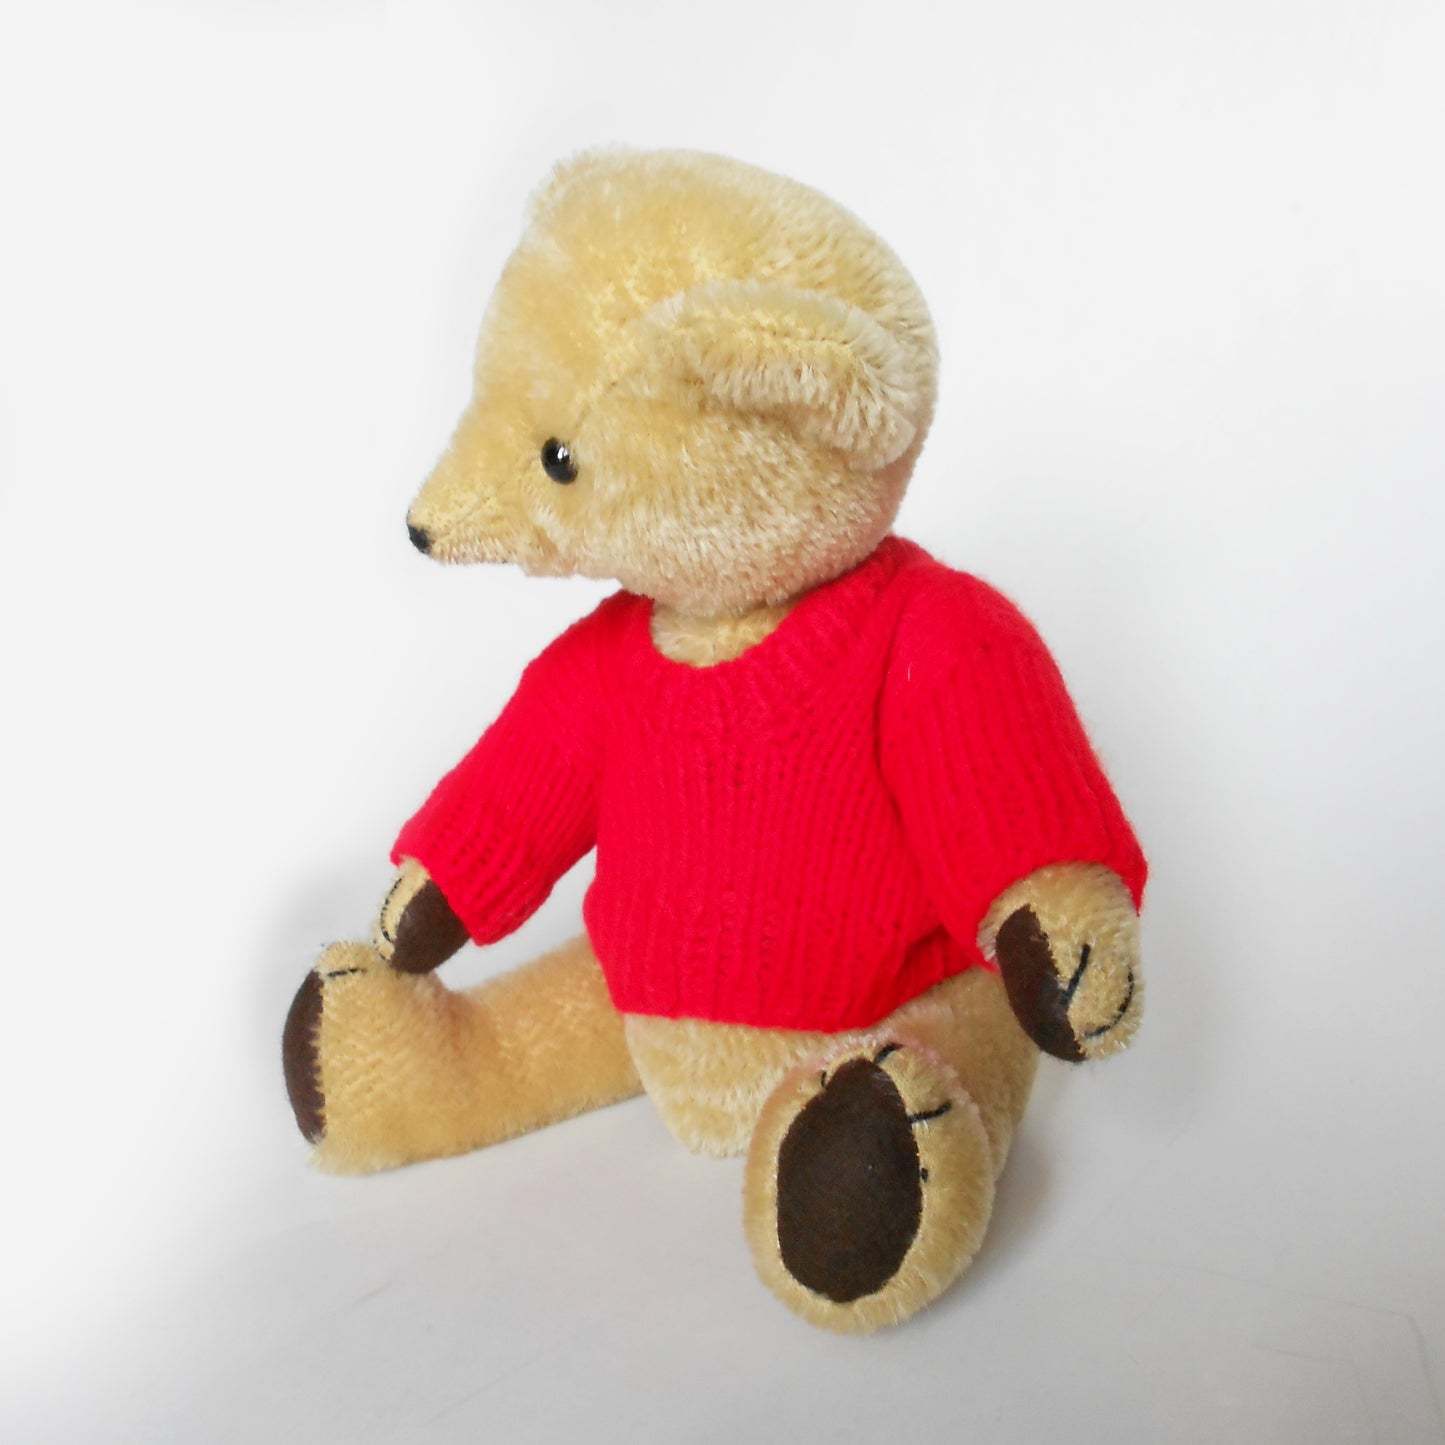 Wilf the handmade mohair teddy bear